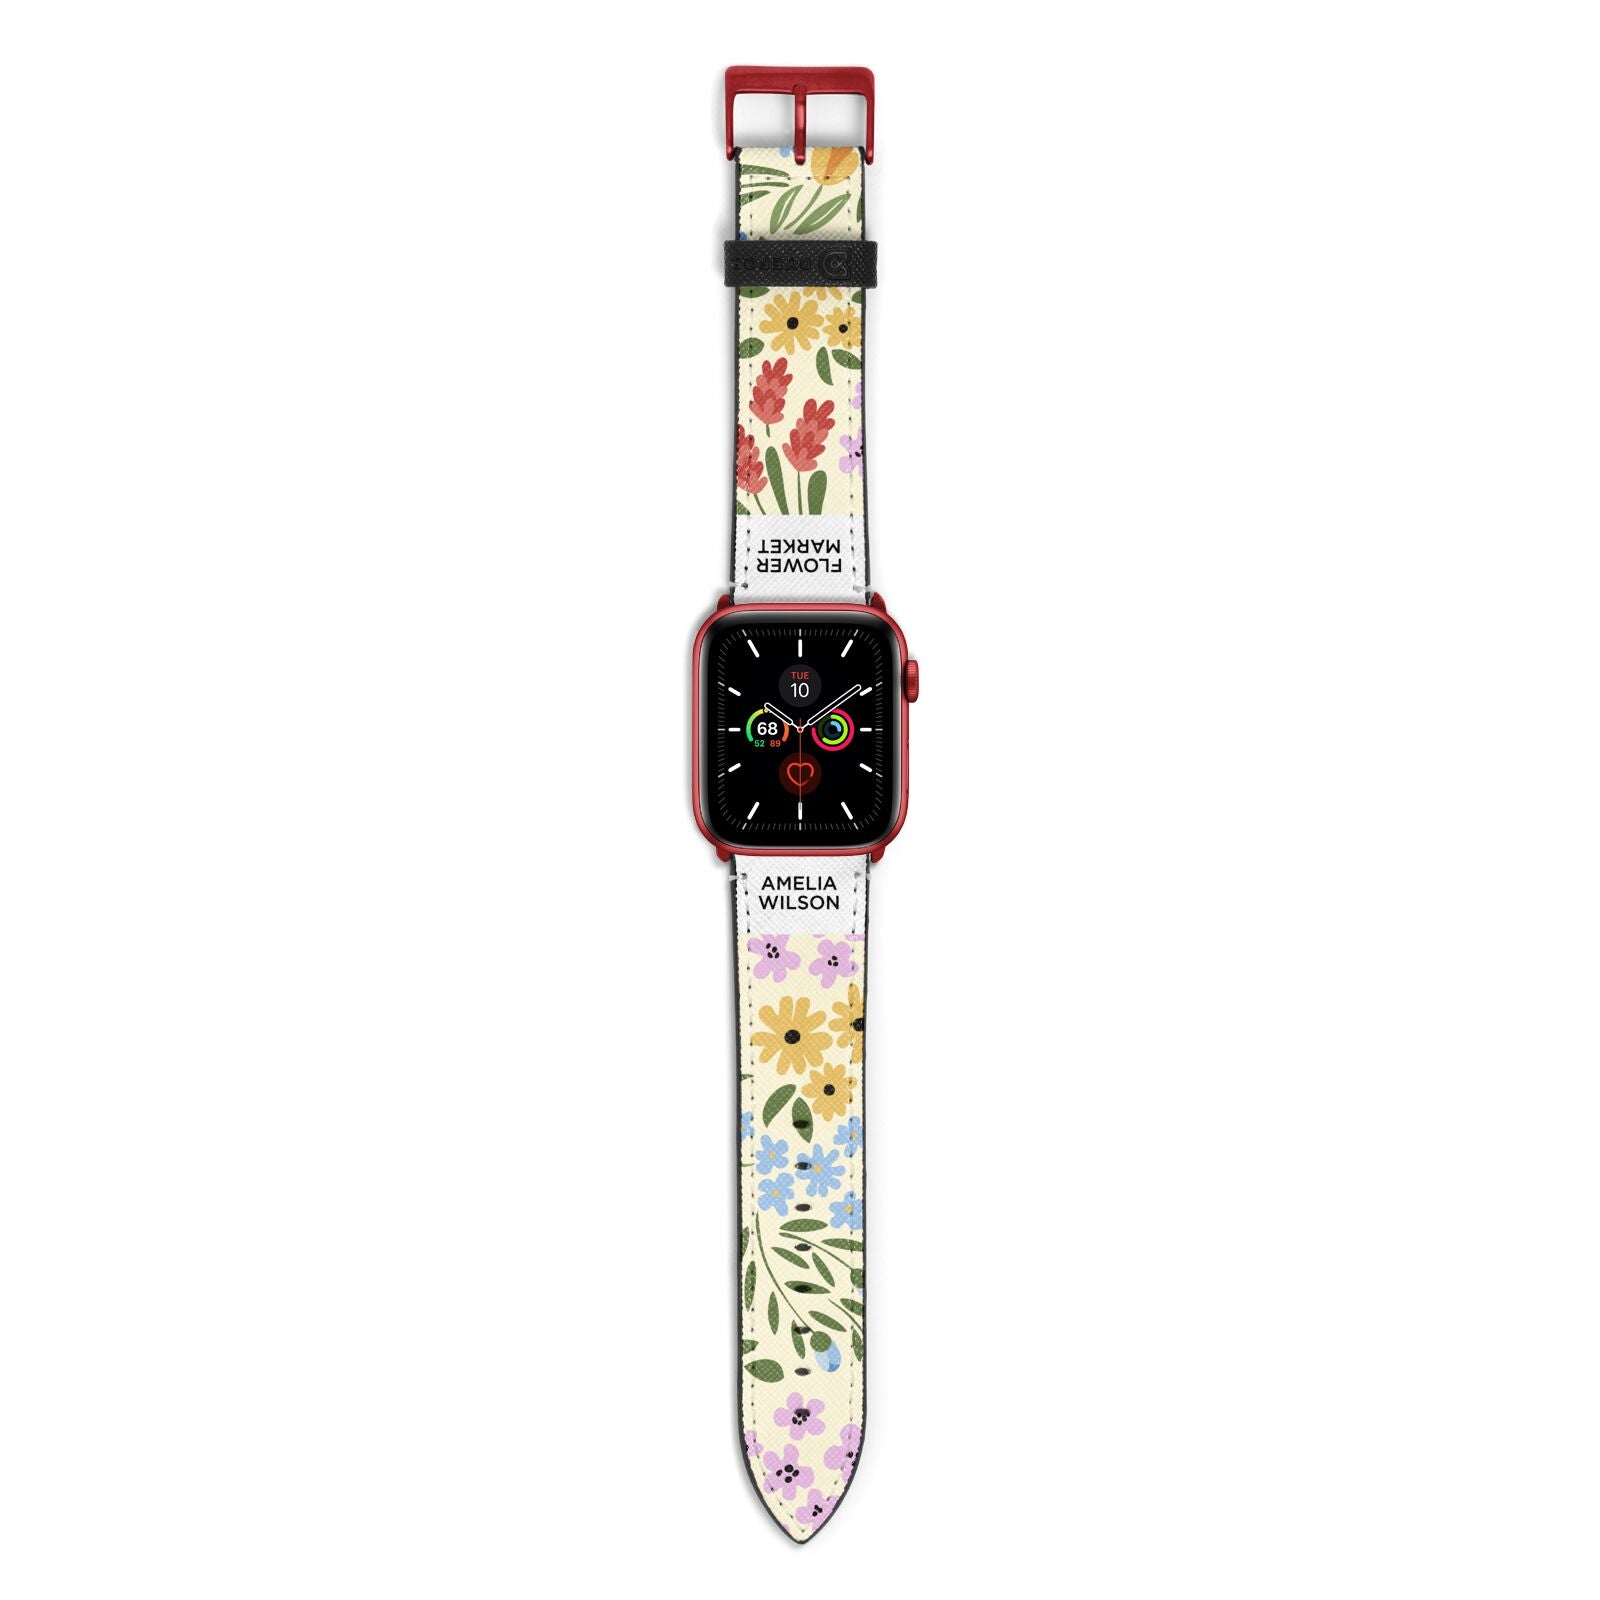 Paris Flower Market Apple Watch Strap with Red Hardware